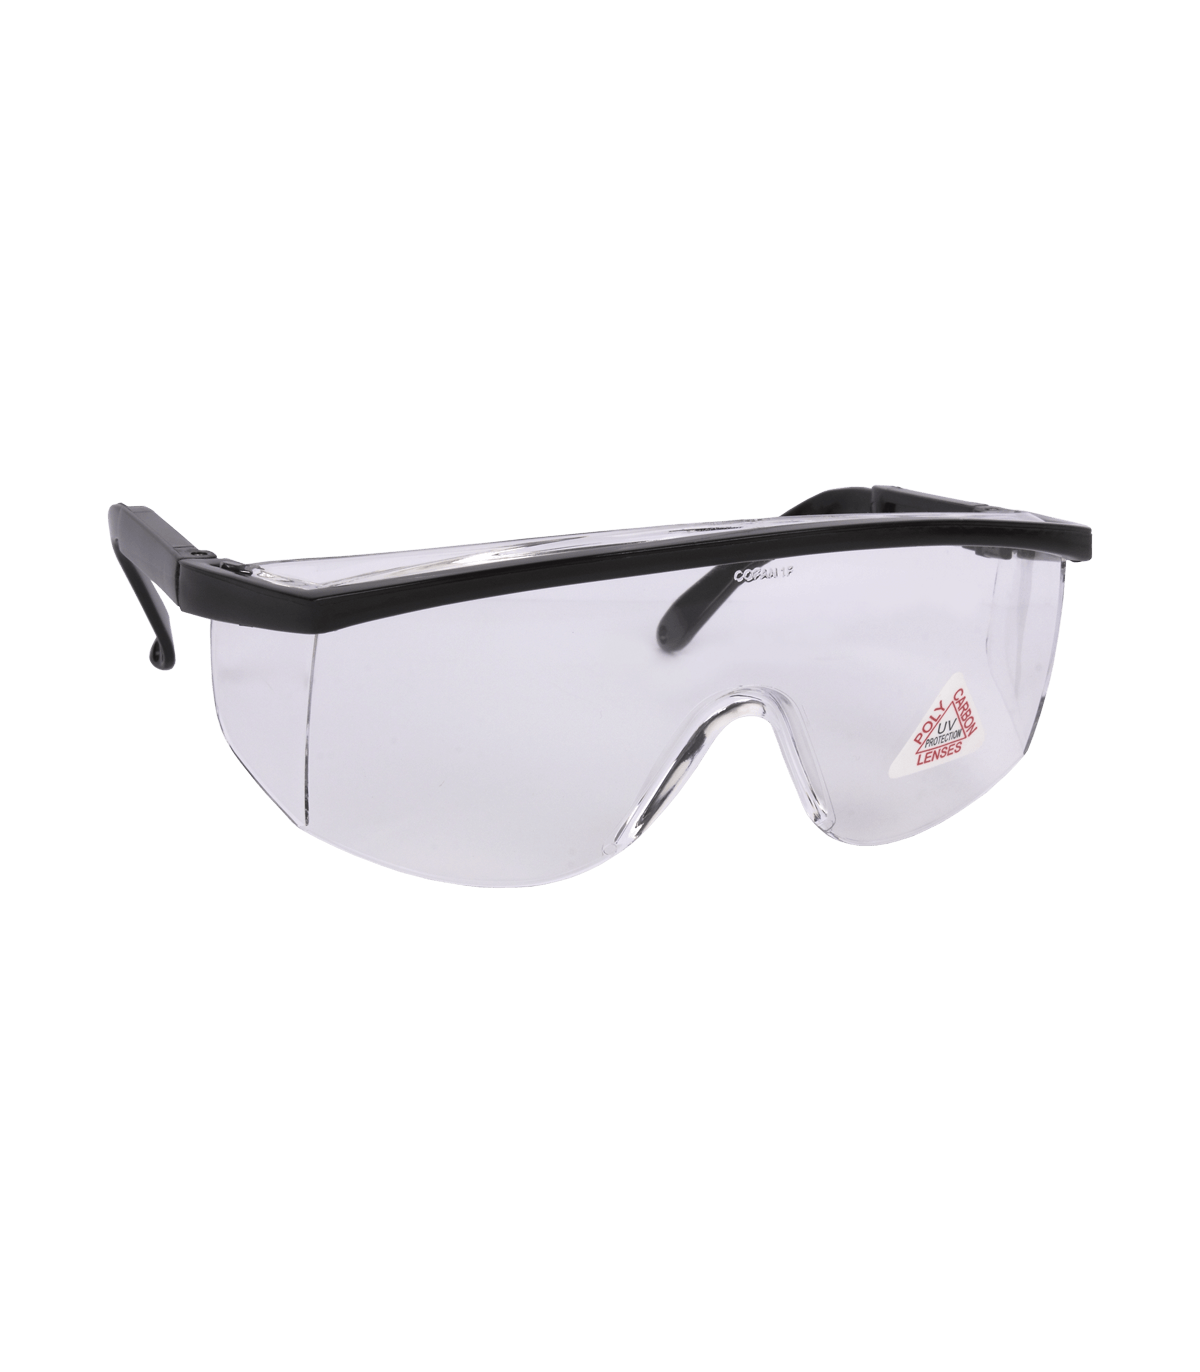 Gafas Seguridad Mod. Estándar, blancas transparentes. UNE-EN 166F. skrc